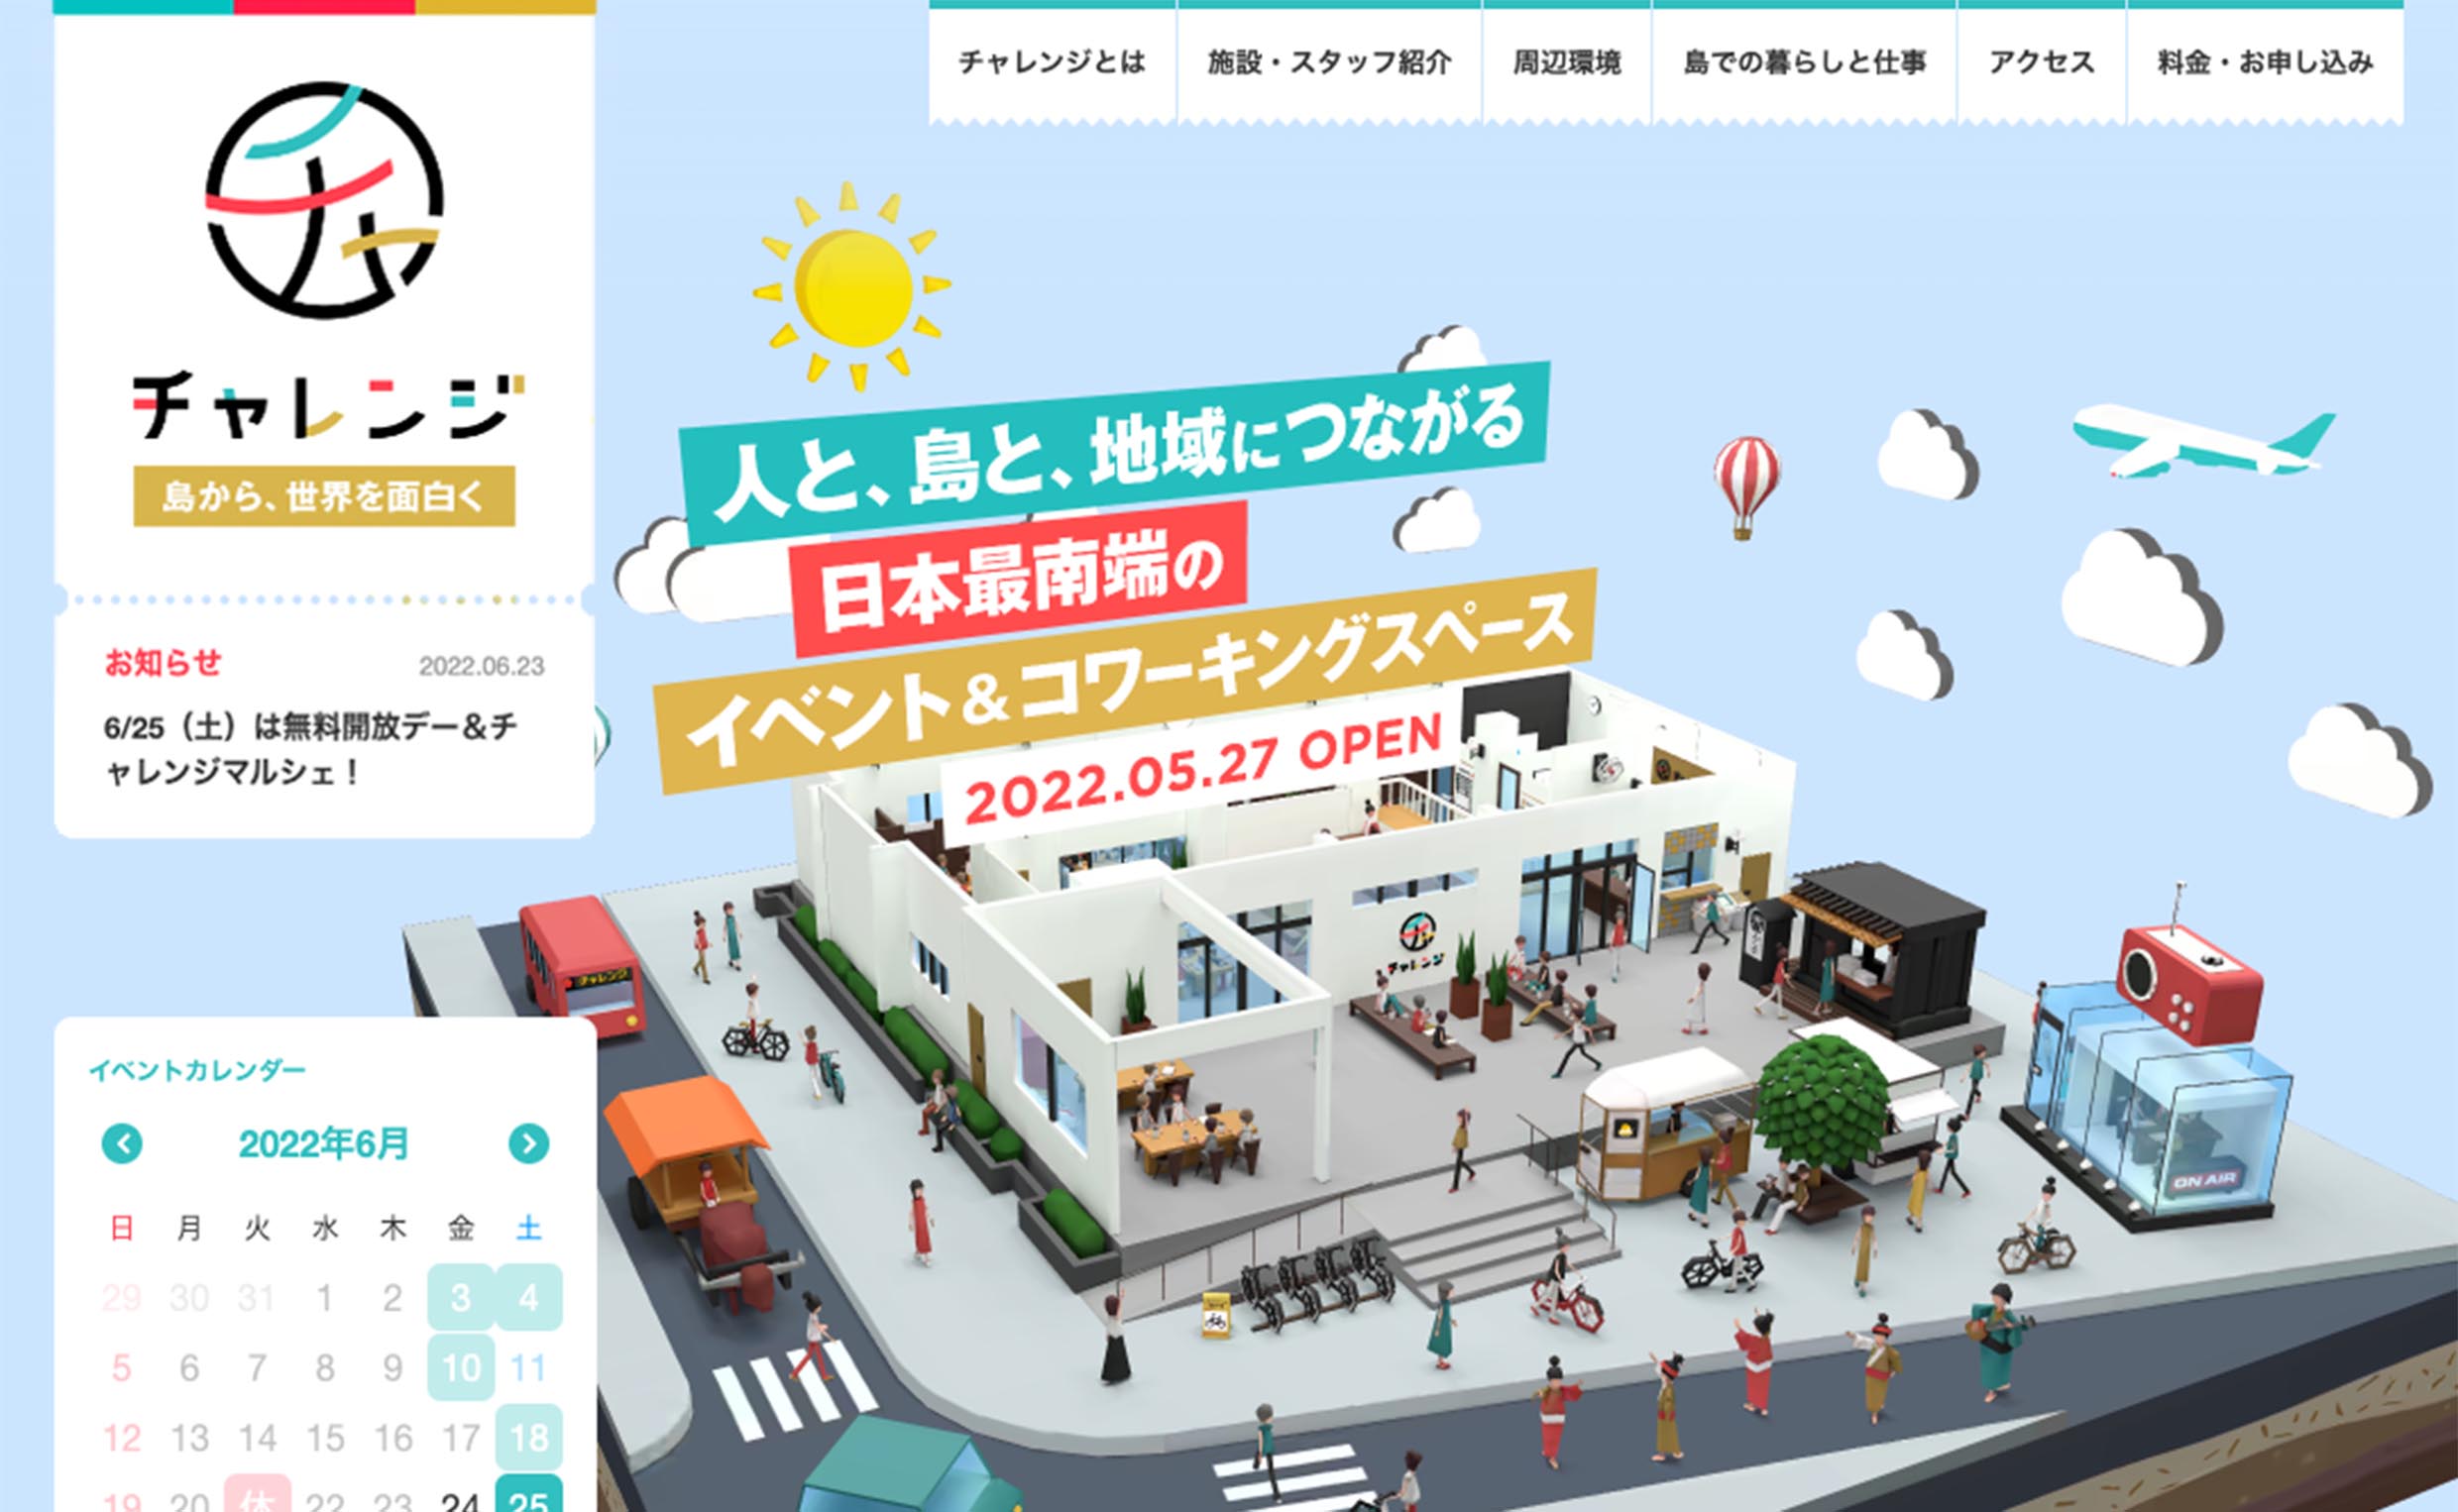 石垣島最大規模のテレワーク・ワーケーション・コワーキングスペース チャレンジ